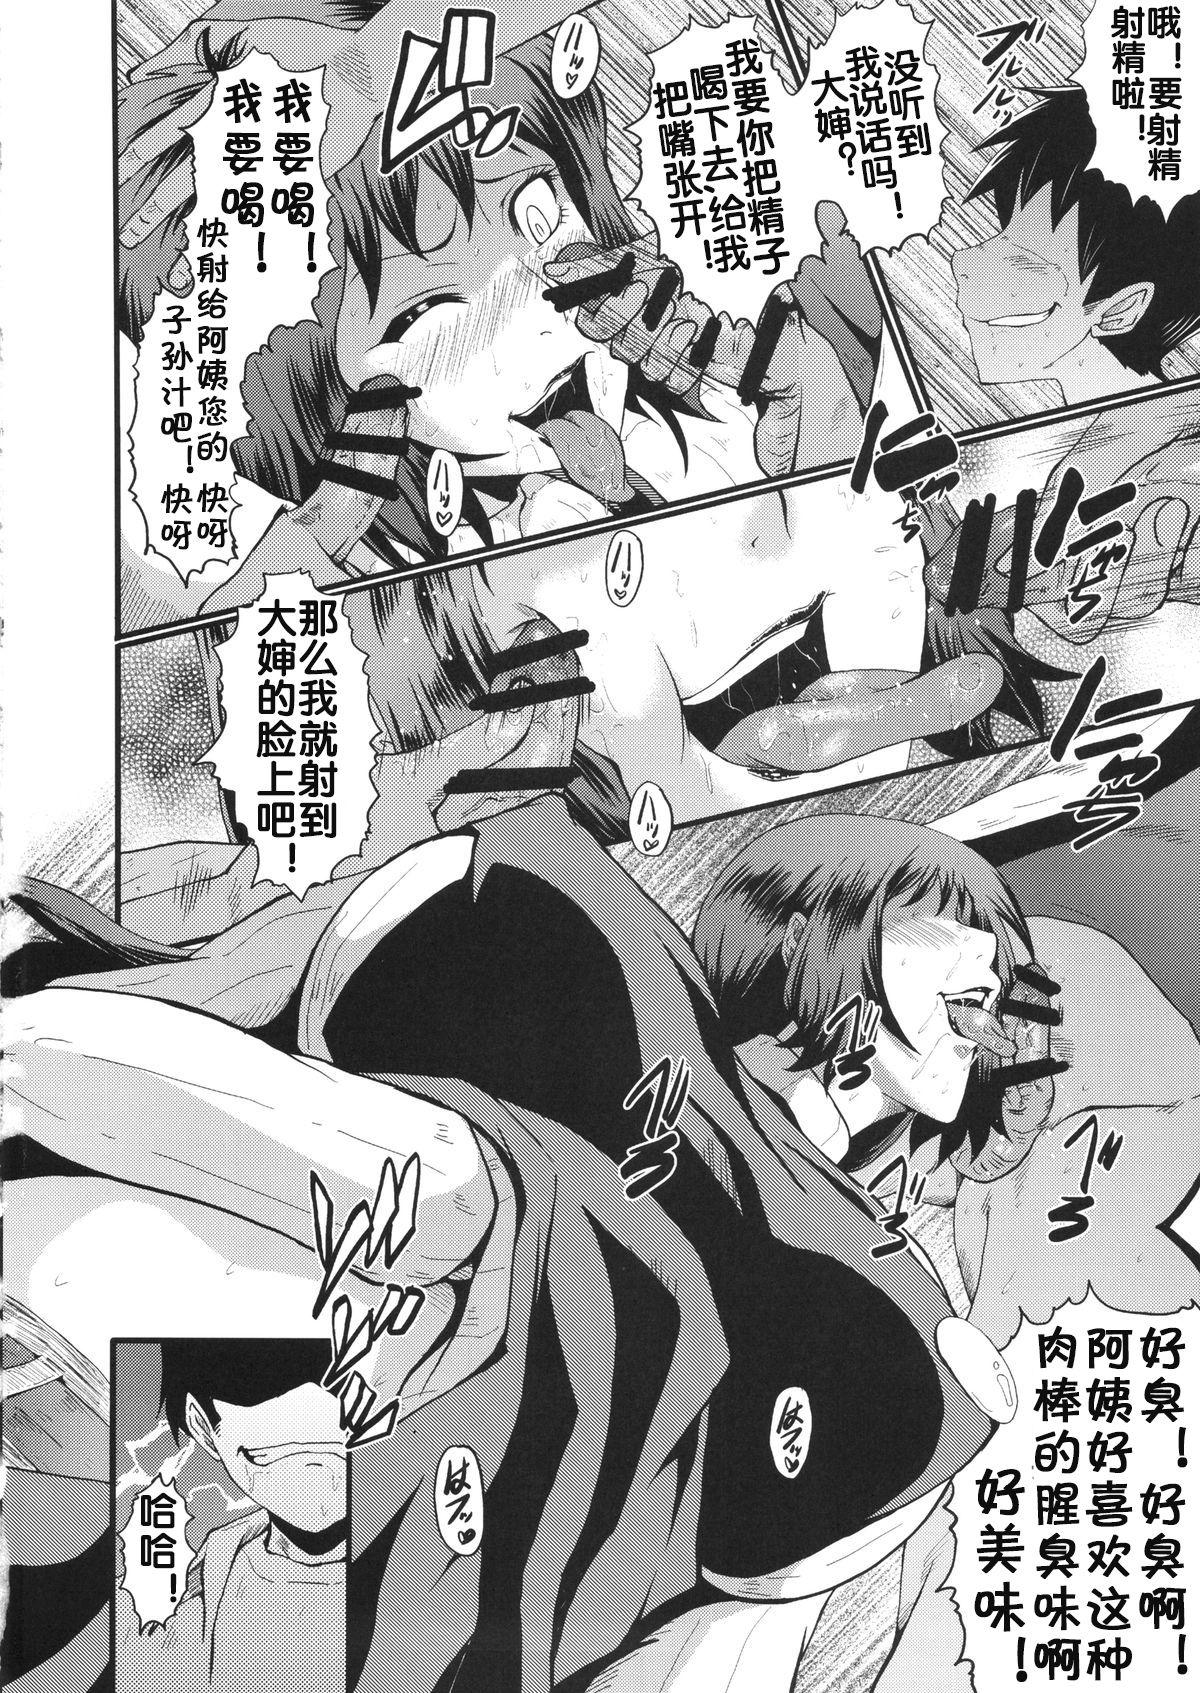 Women Fucking Urabambi Vol. 49 Kaa-san wa Boku ga Shiranai Uchi ni Omanko ni DoHamari shite mashita. - Gundam build fighters Free Hardcore - Page 9